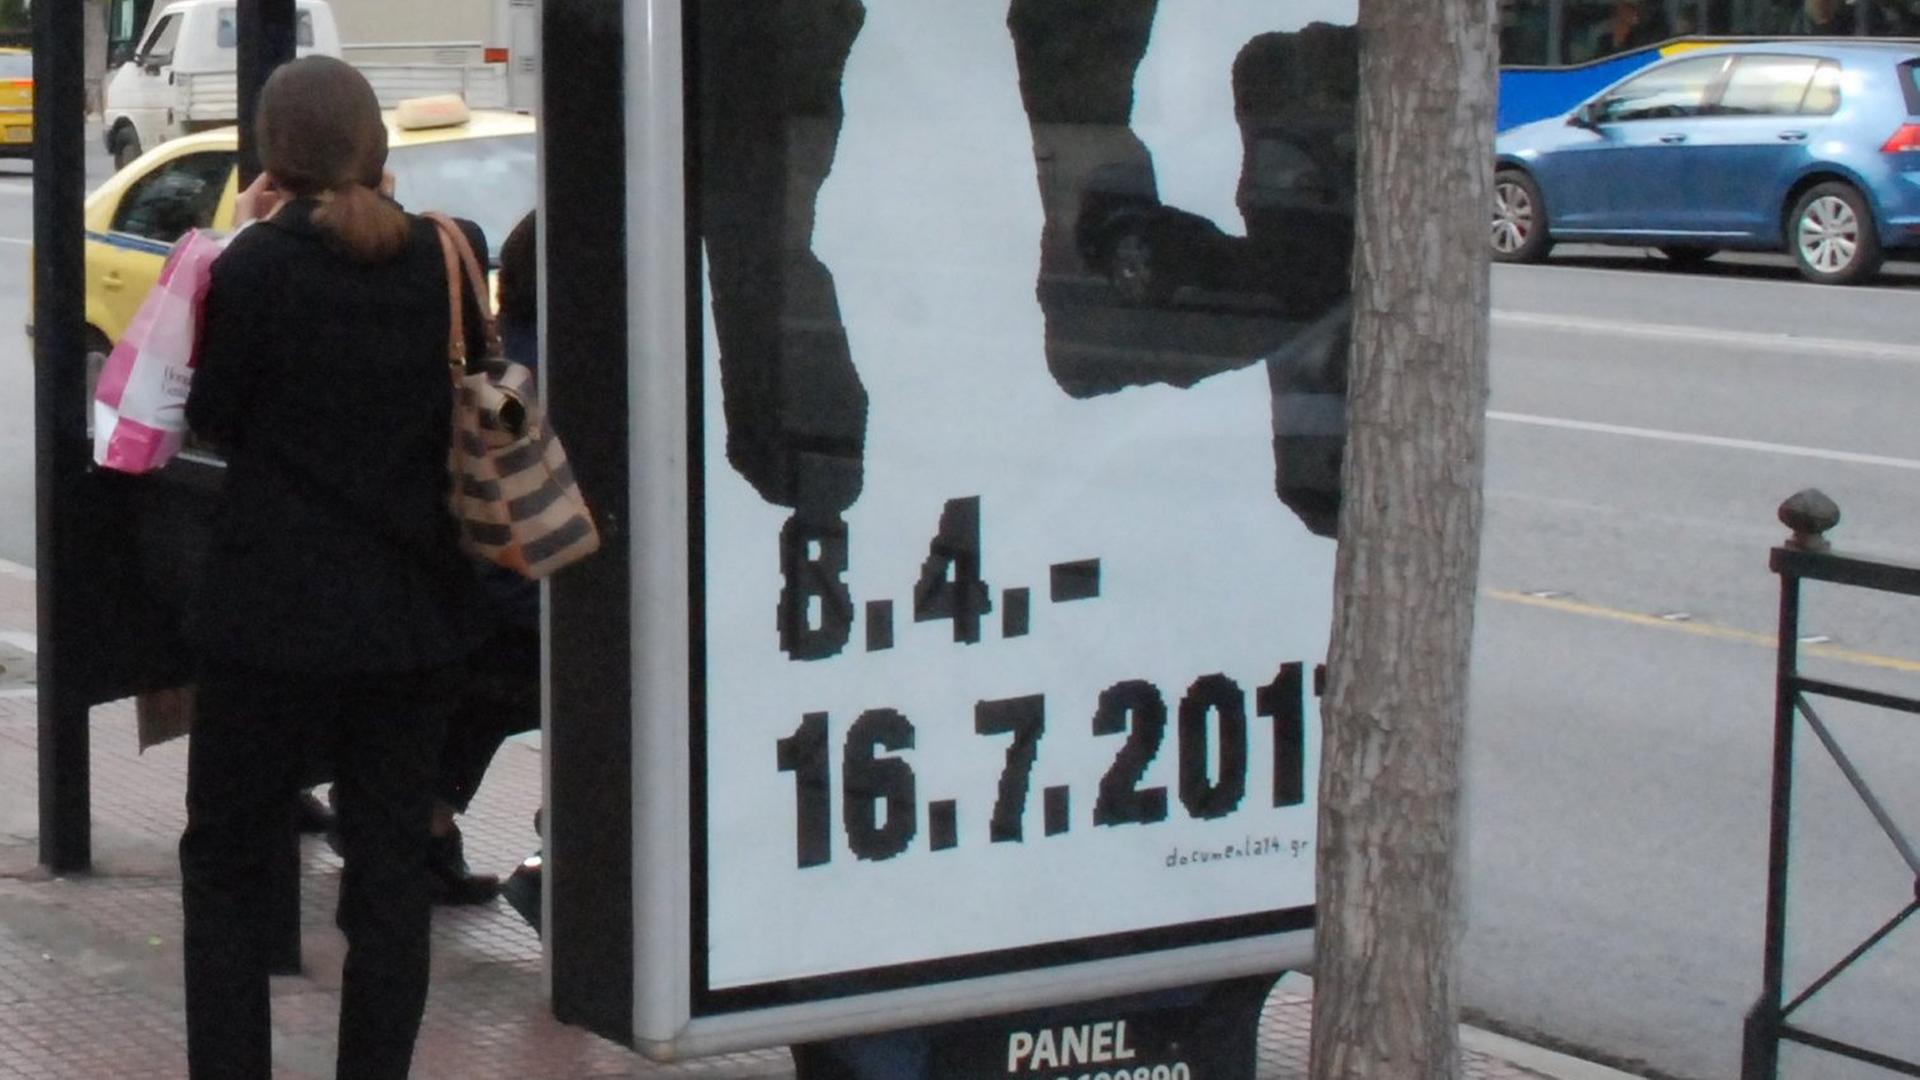 Werbung für die internationale Kunstausstellung documenta 14 an einer Bushaltestelle in Athen, aufgenommen am 03.04.2017.